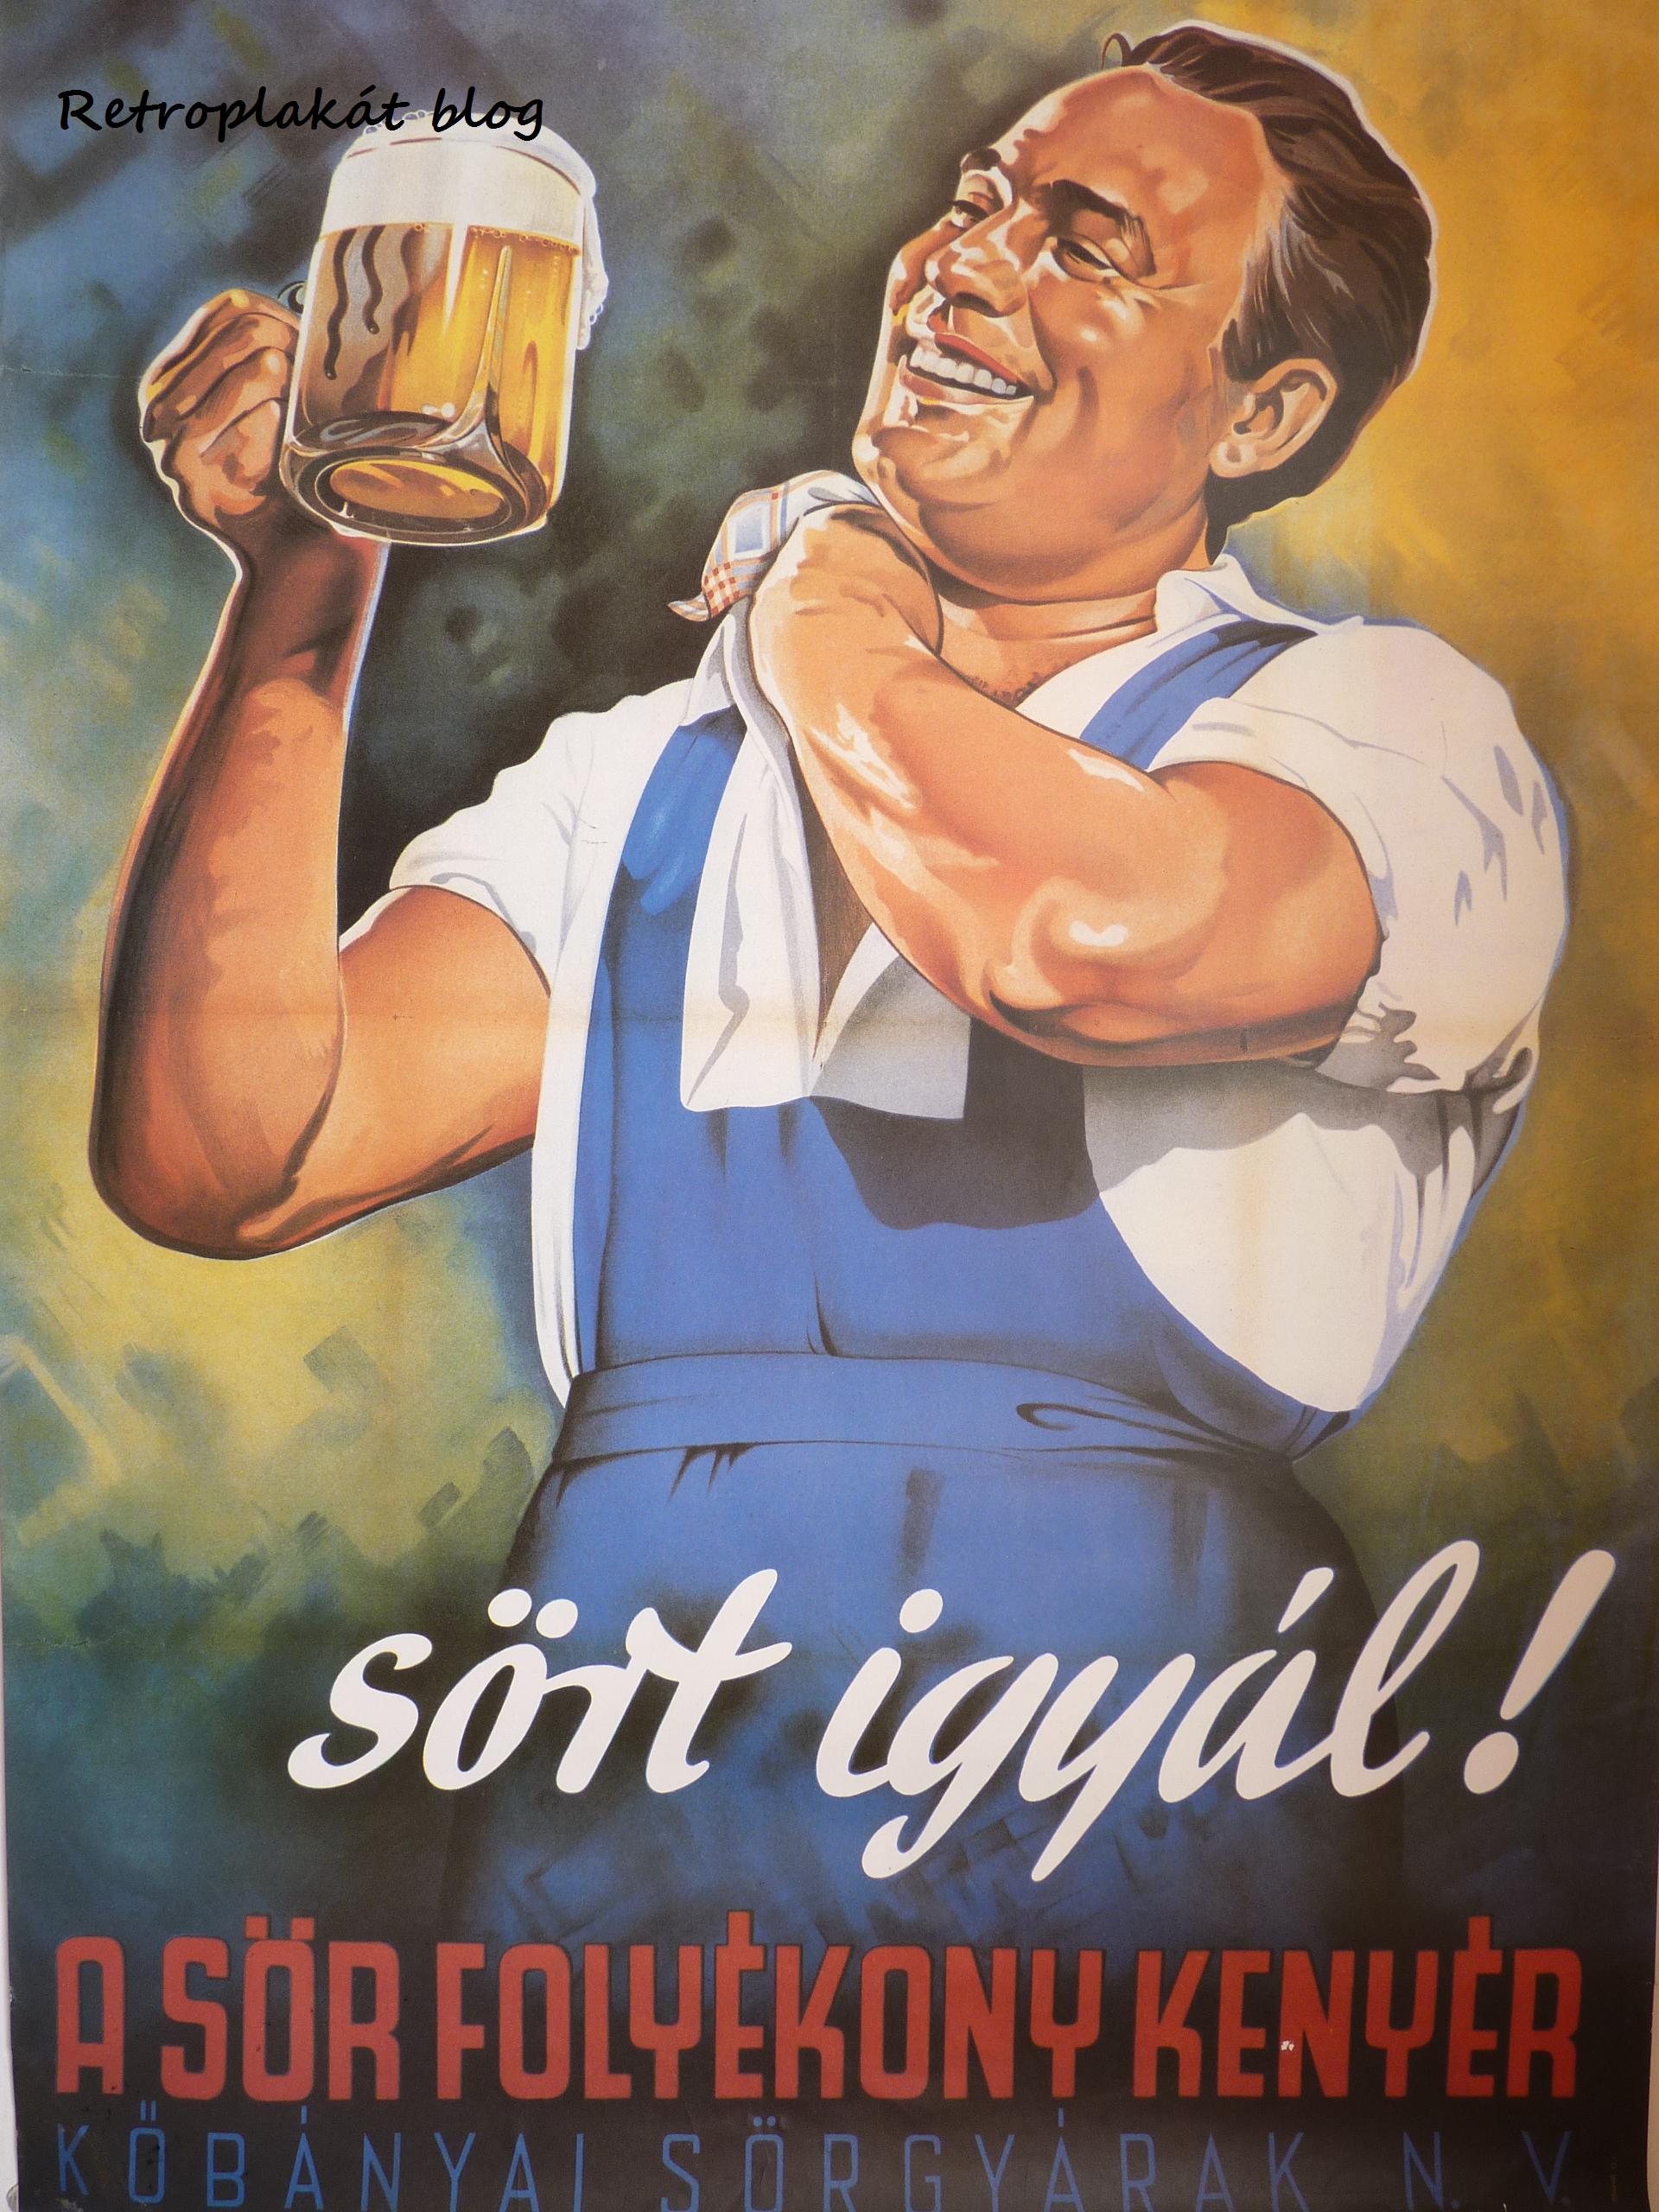 Hogyan buzdított gyengéden a szocializmus alkoholizmusra? - Retroplakát